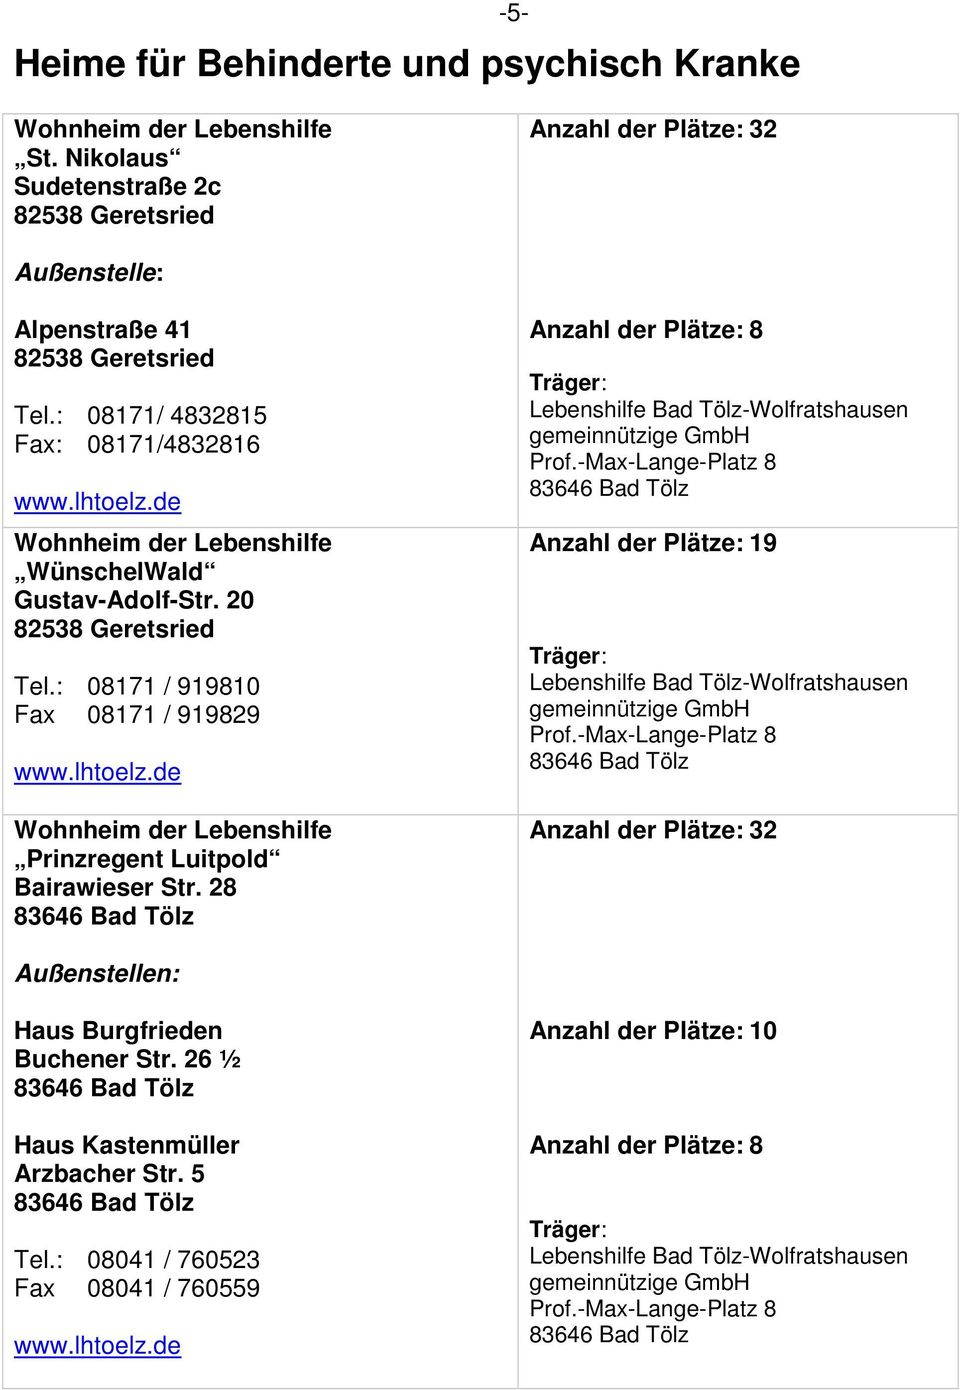 28 Anzahl der Plätze: 8 Lebenshilfe Bad Tölz-Wolfratshausen gemeinnützige GmbH Prof.-Max-Lange-Platz 8 Anzahl der Plätze: 19 Lebenshilfe Bad Tölz-Wolfratshausen gemeinnützige GmbH Prof.